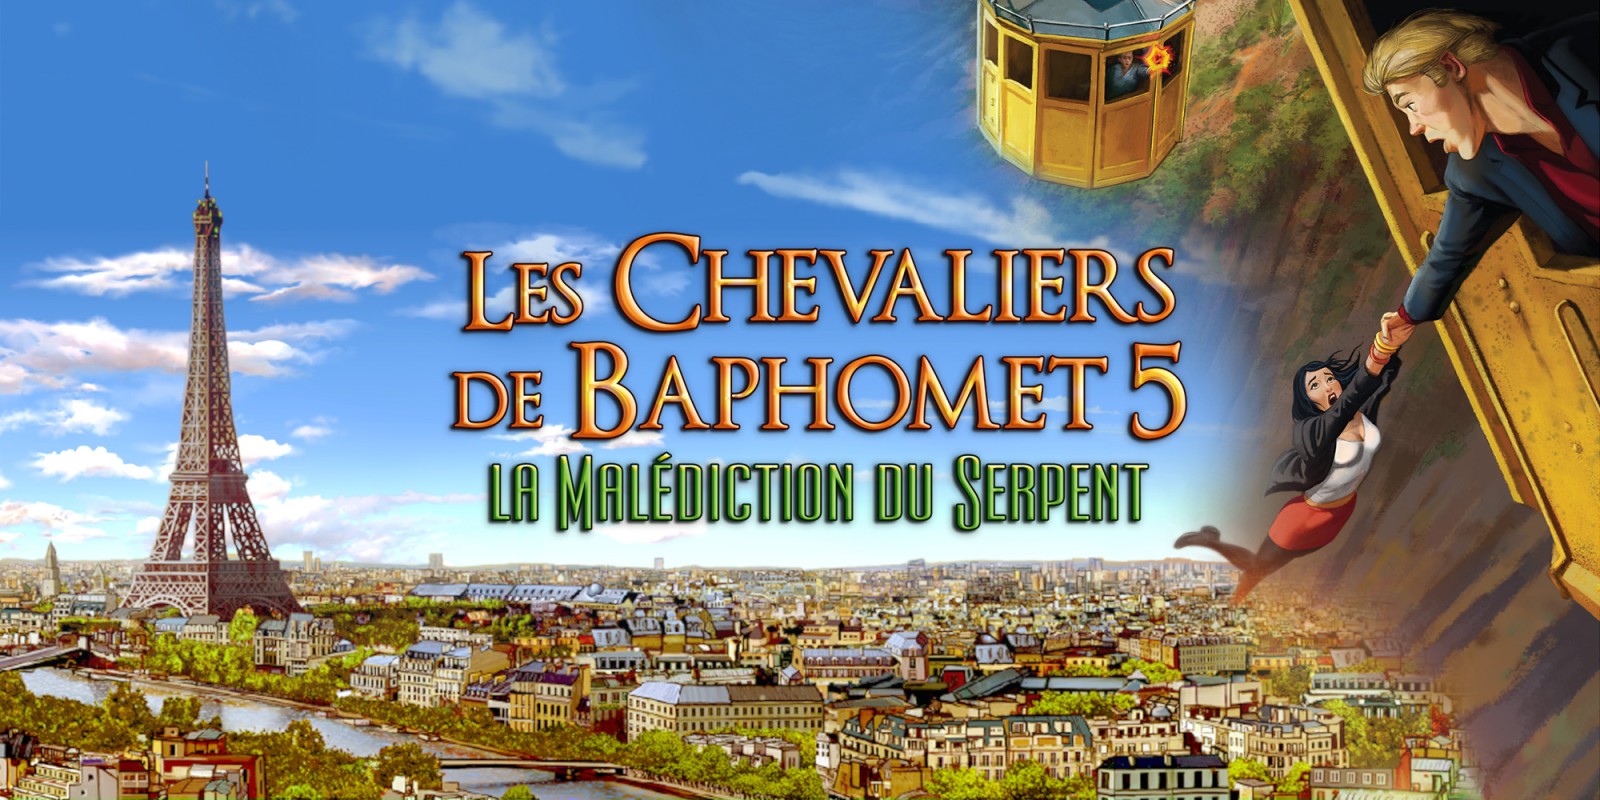 Les Chevaliers de Baphomet 5 - La Malédiction du Serpent